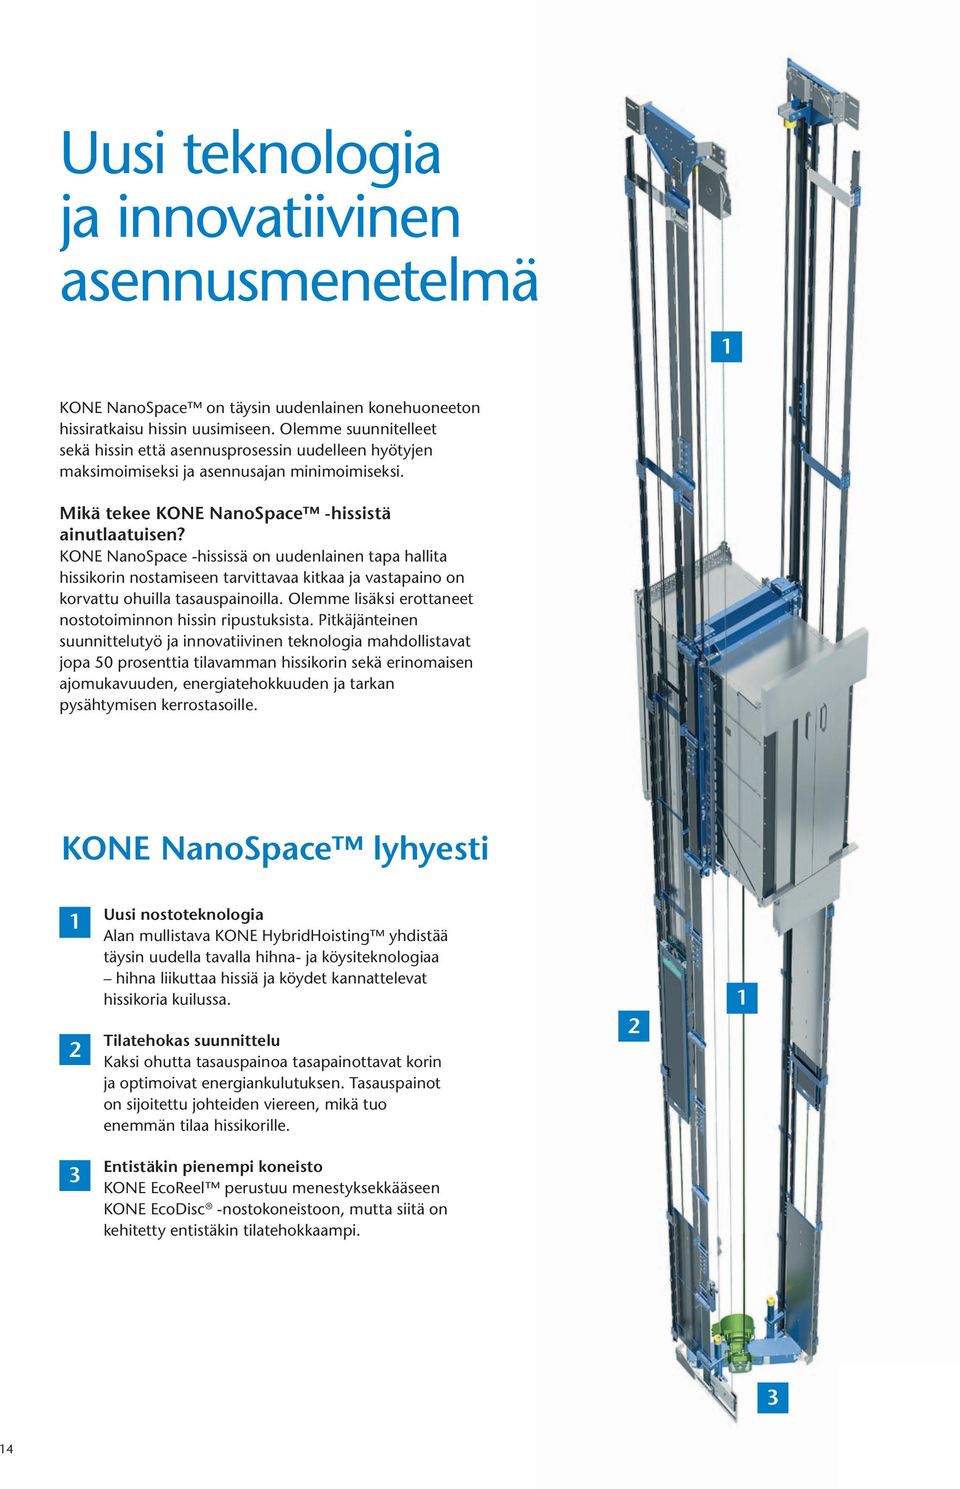 KONE NanoSpace -hississä on uudenlainen tapa hallita hissikorin nostamiseen tarvittavaa kitkaa ja vastapaino on korvattu ohuilla tasauspainoilla.